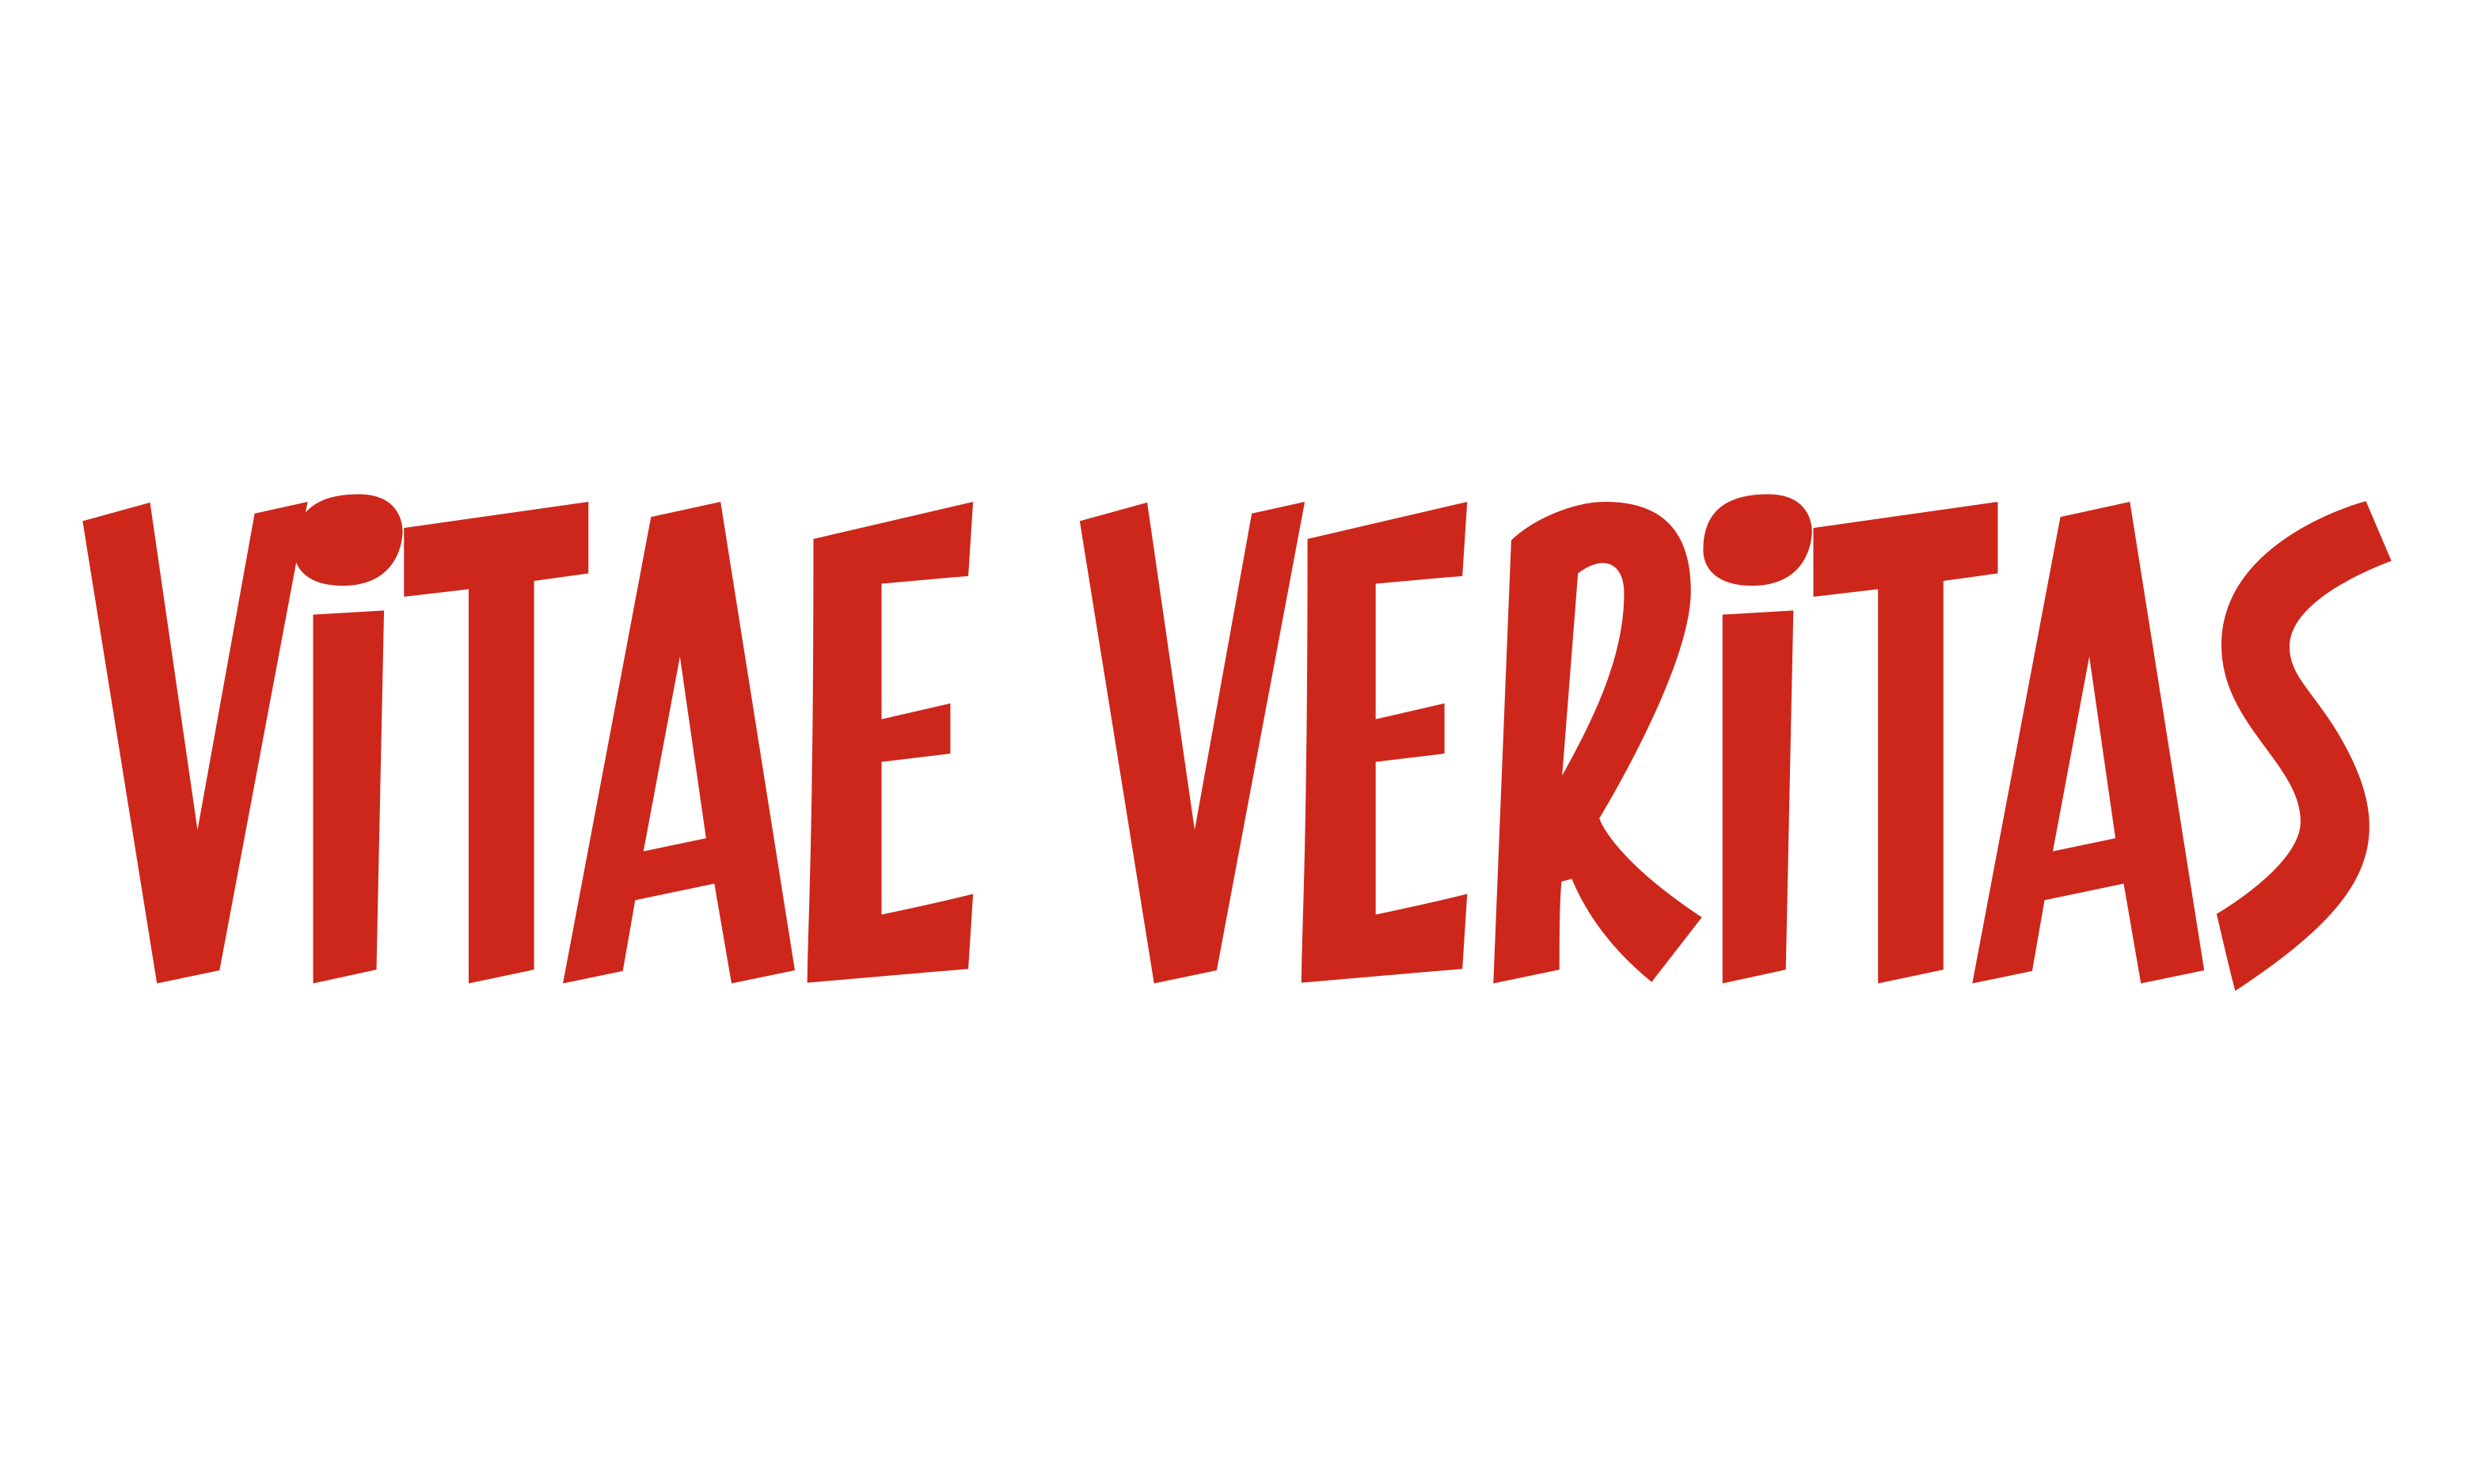 Vitae Veritas Logo in red